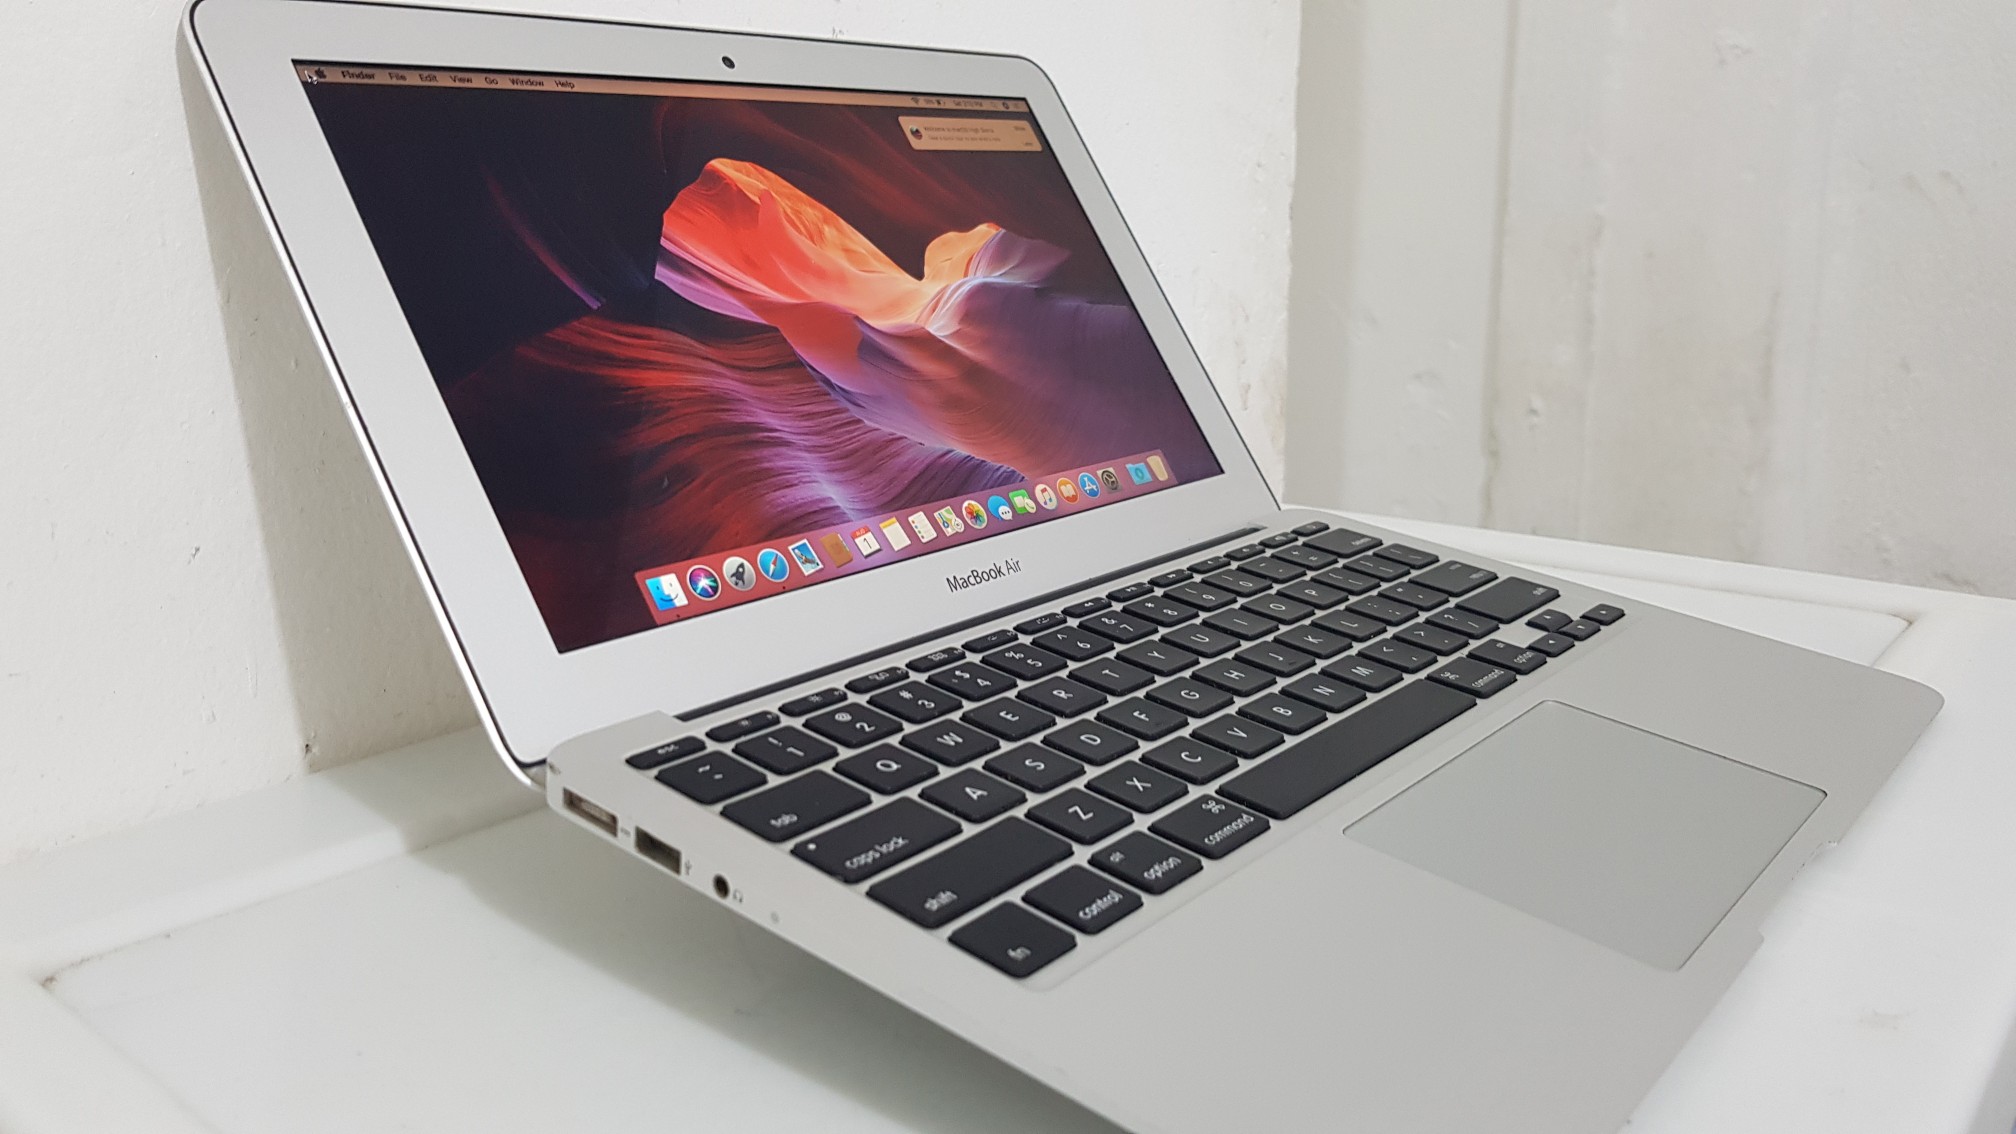 computadoras y laptops - Macbook Air año 2015 13 Pulg Core i5 Ram 4gb Disco 128gb  1